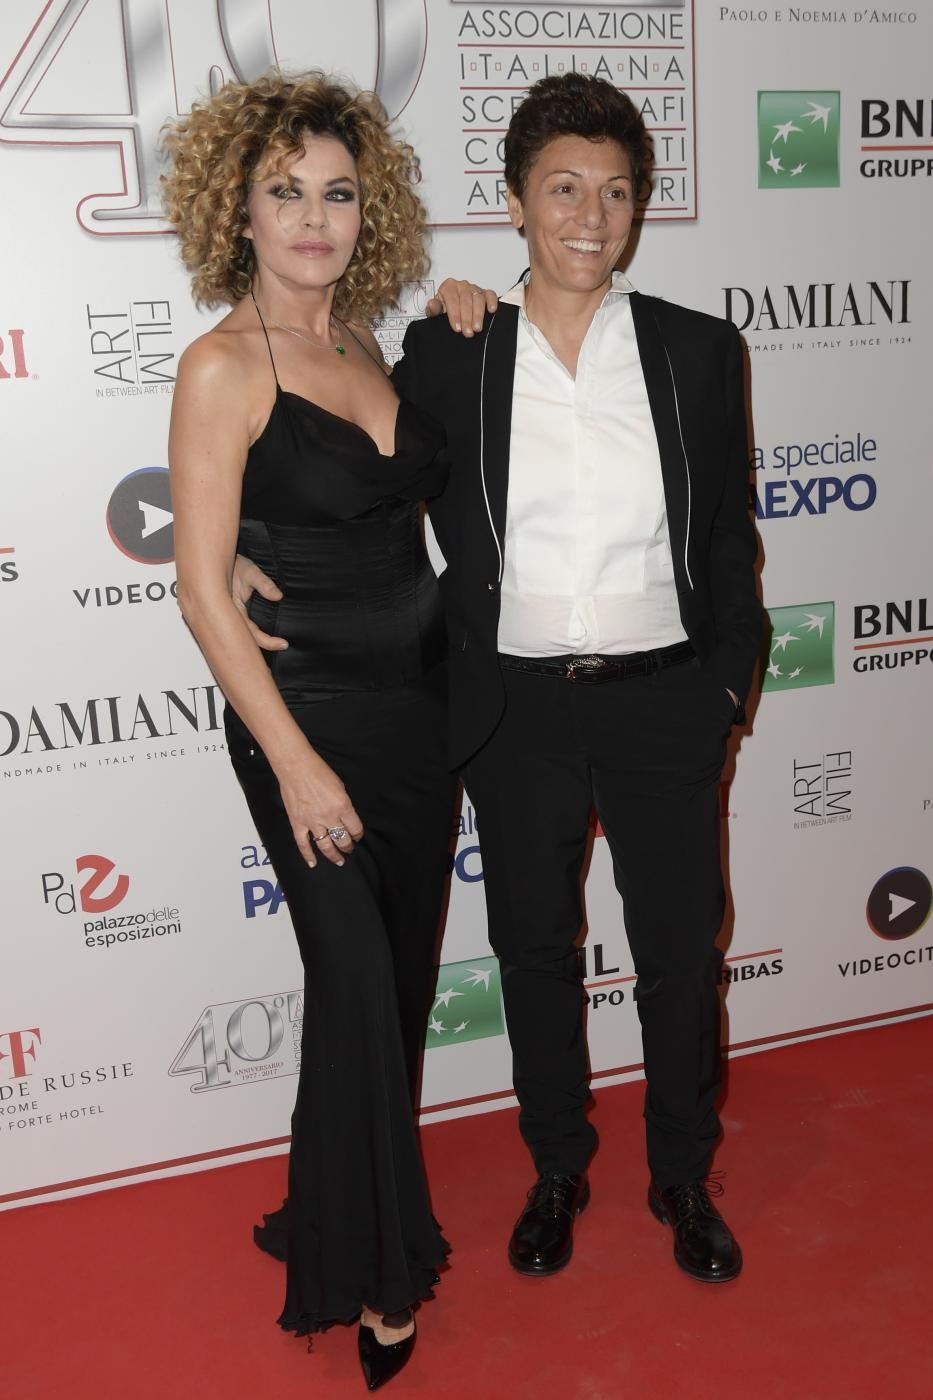 Eva Grimaldi e Imma Battaglia spose: il matrimonio su Real Time con Enzo Miccio